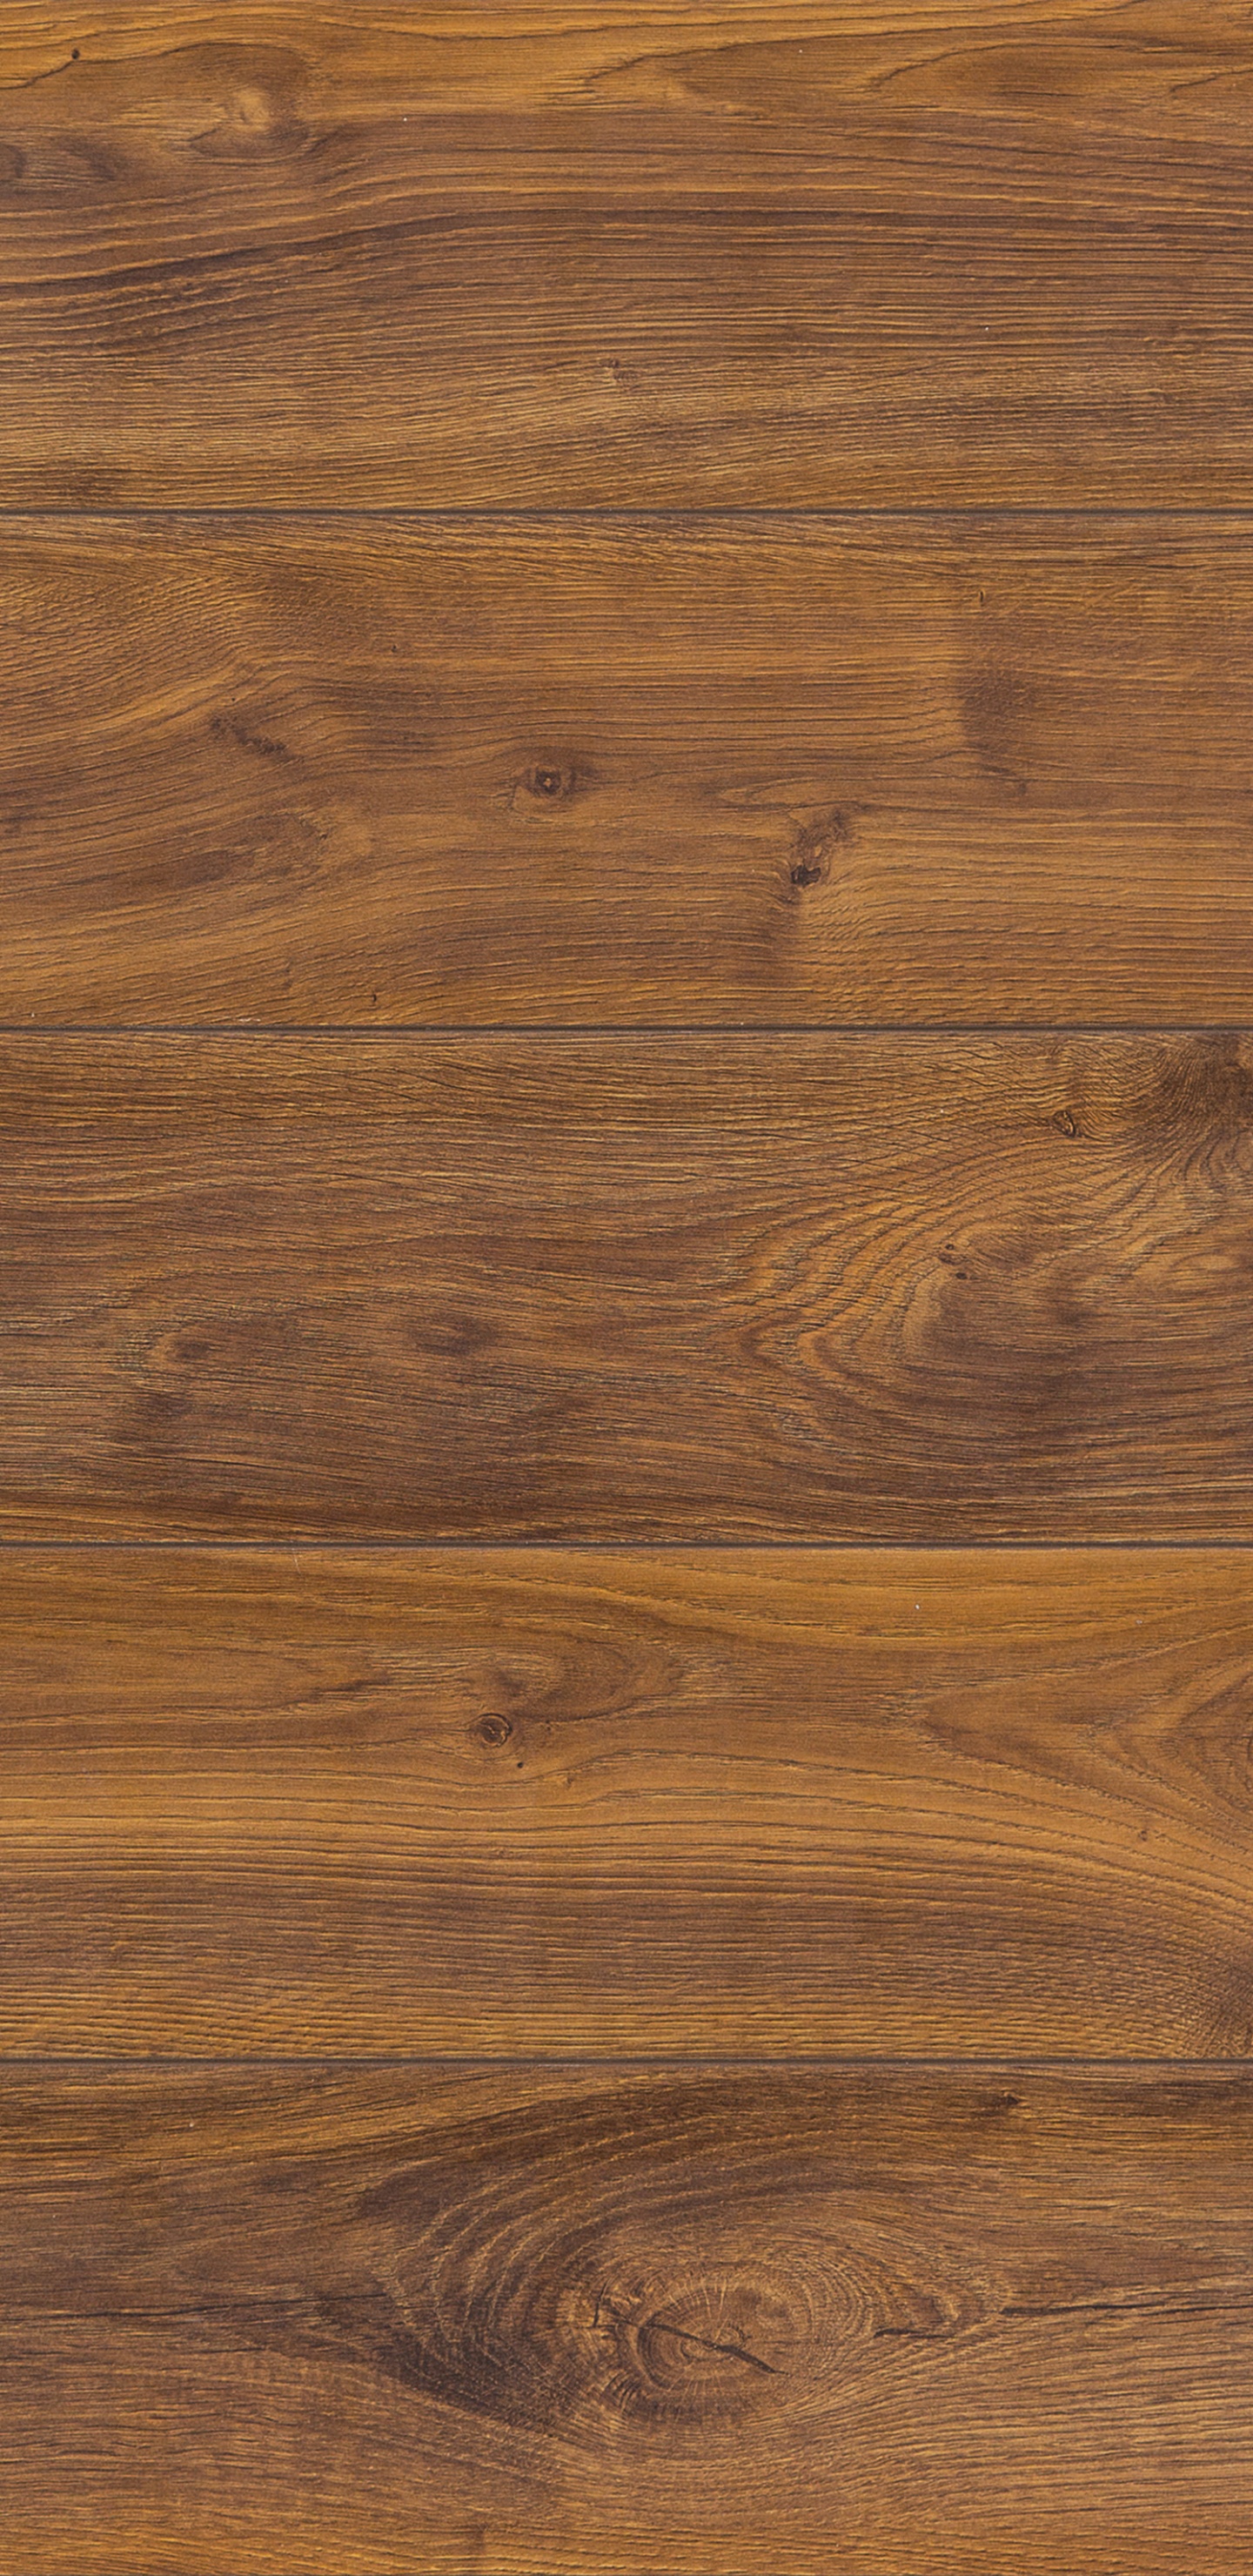 Brown Wooden Parquet Floor Tiles. Wallpaper in 1440x2960 Resolution